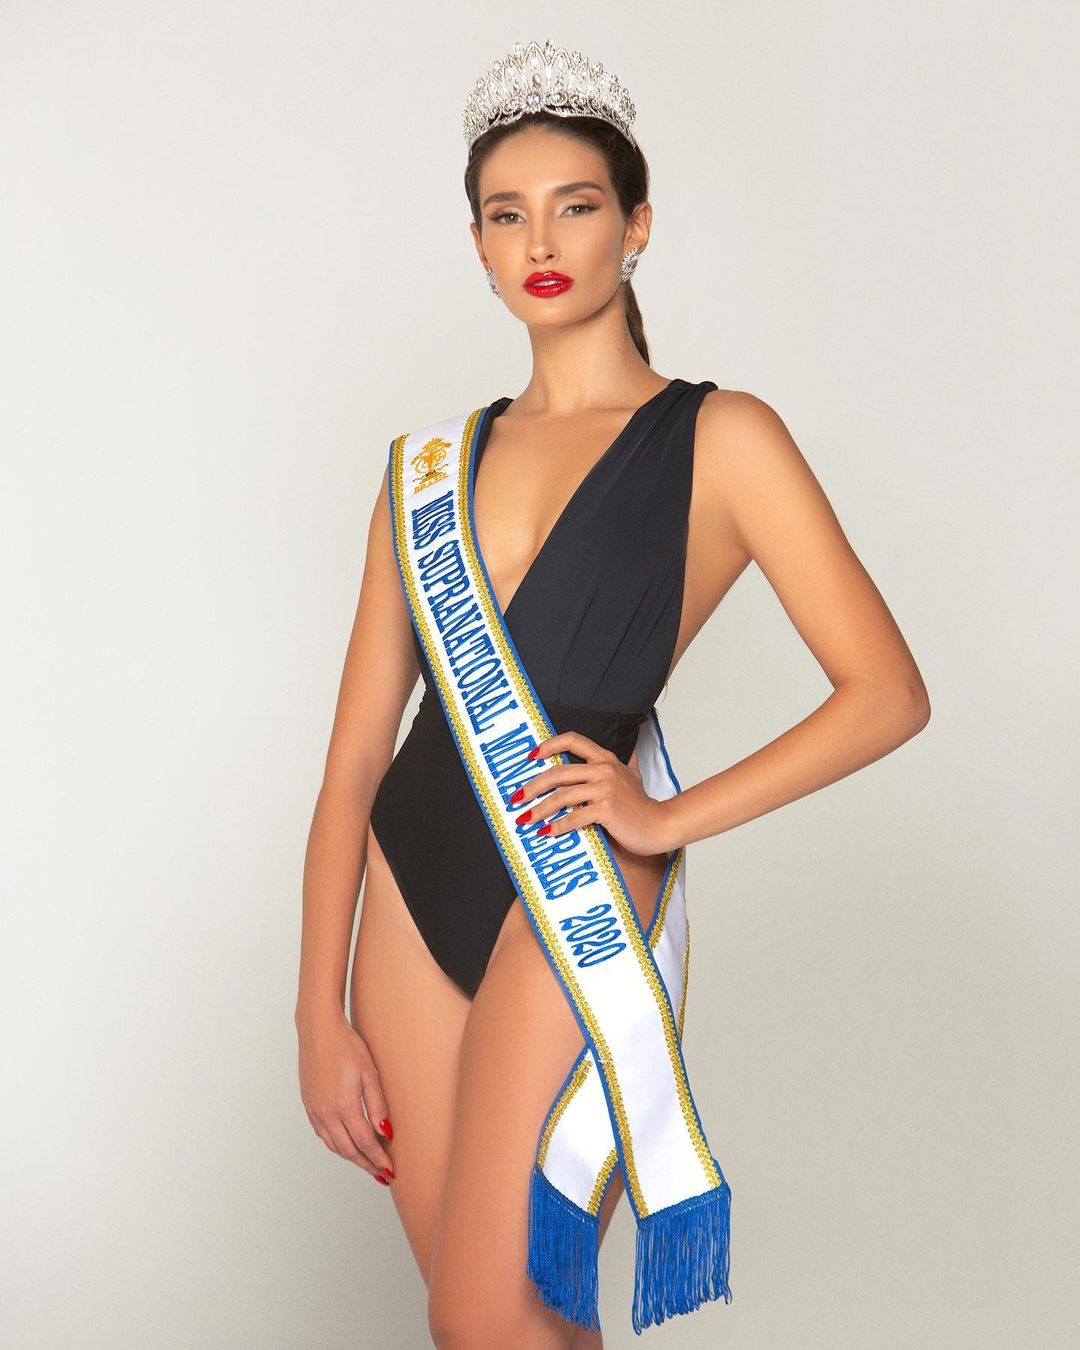 luma russo, top 3 de miss supranational brazil 2020. - Página 2 Alex-765